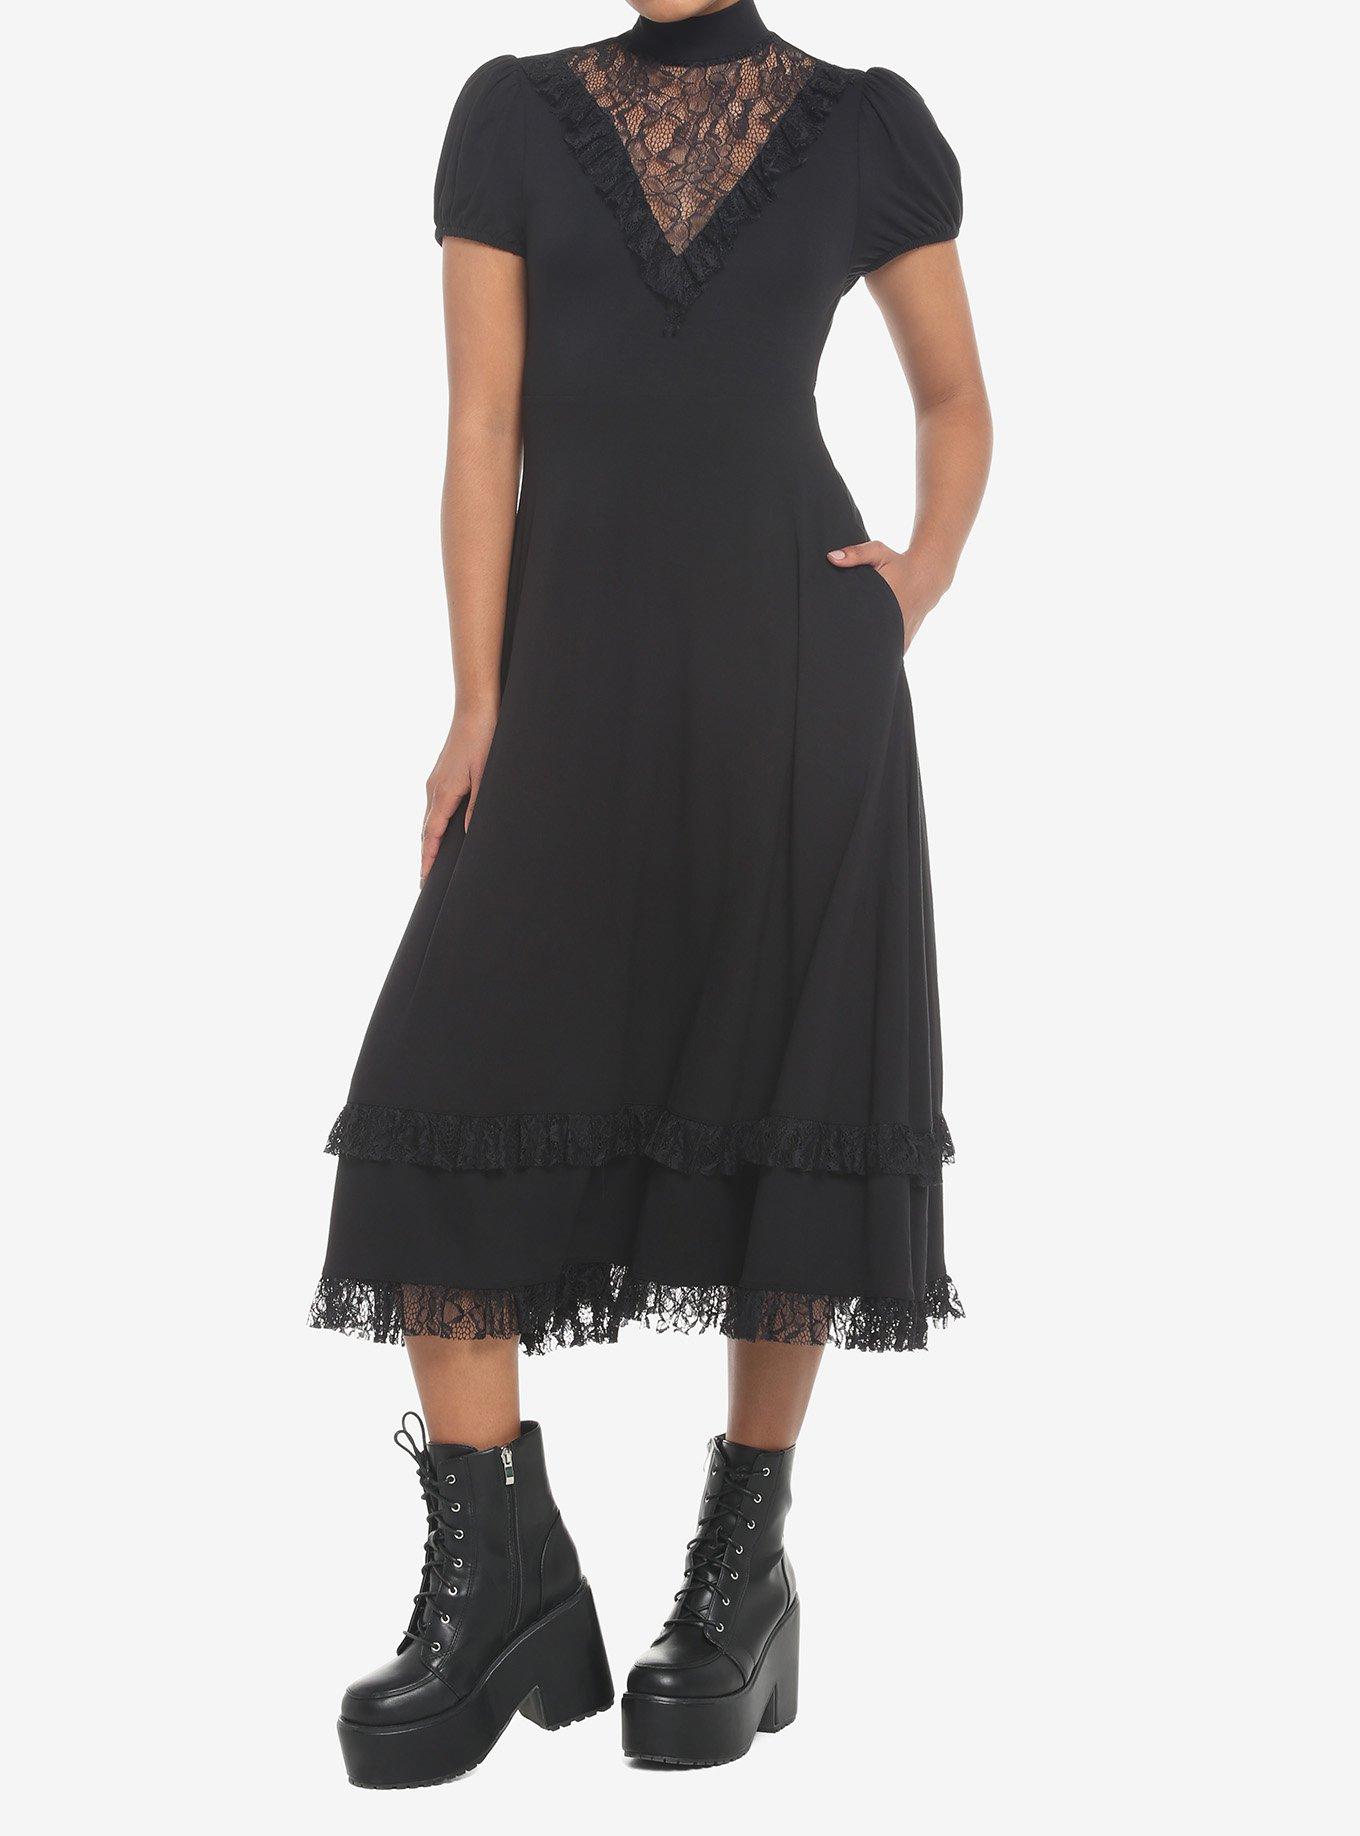 Black Lace Midi Dress, BLACK, alternate